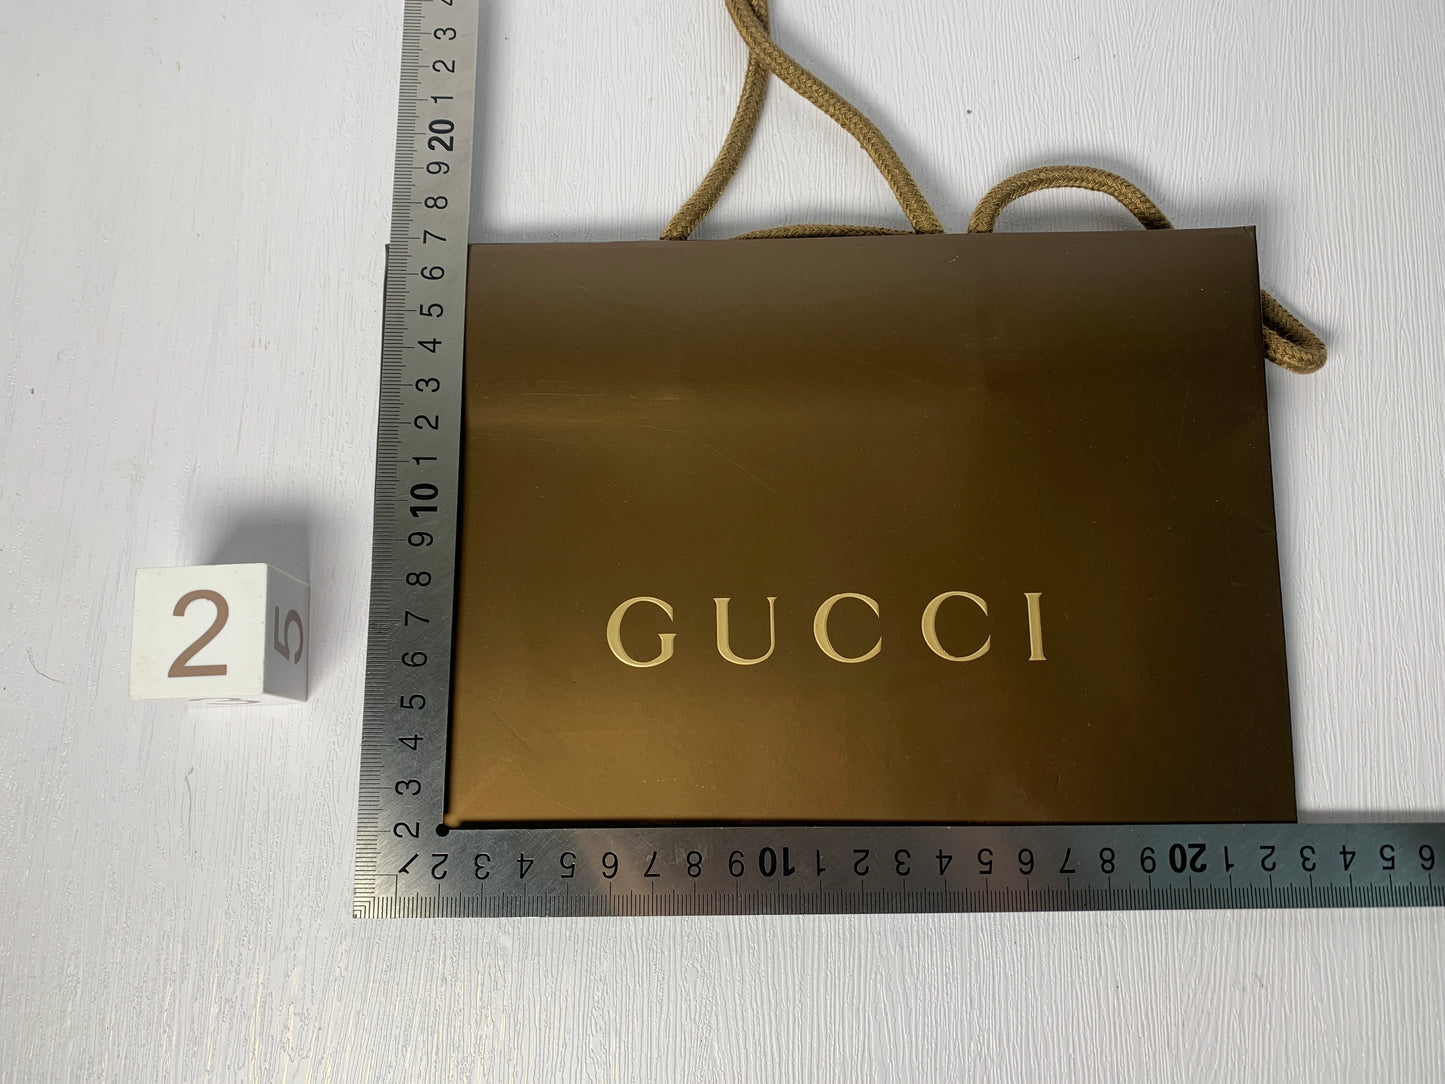 Gucci 禮品紙袋錢包手提包首飾手錶珠寶袋 - 29JAN